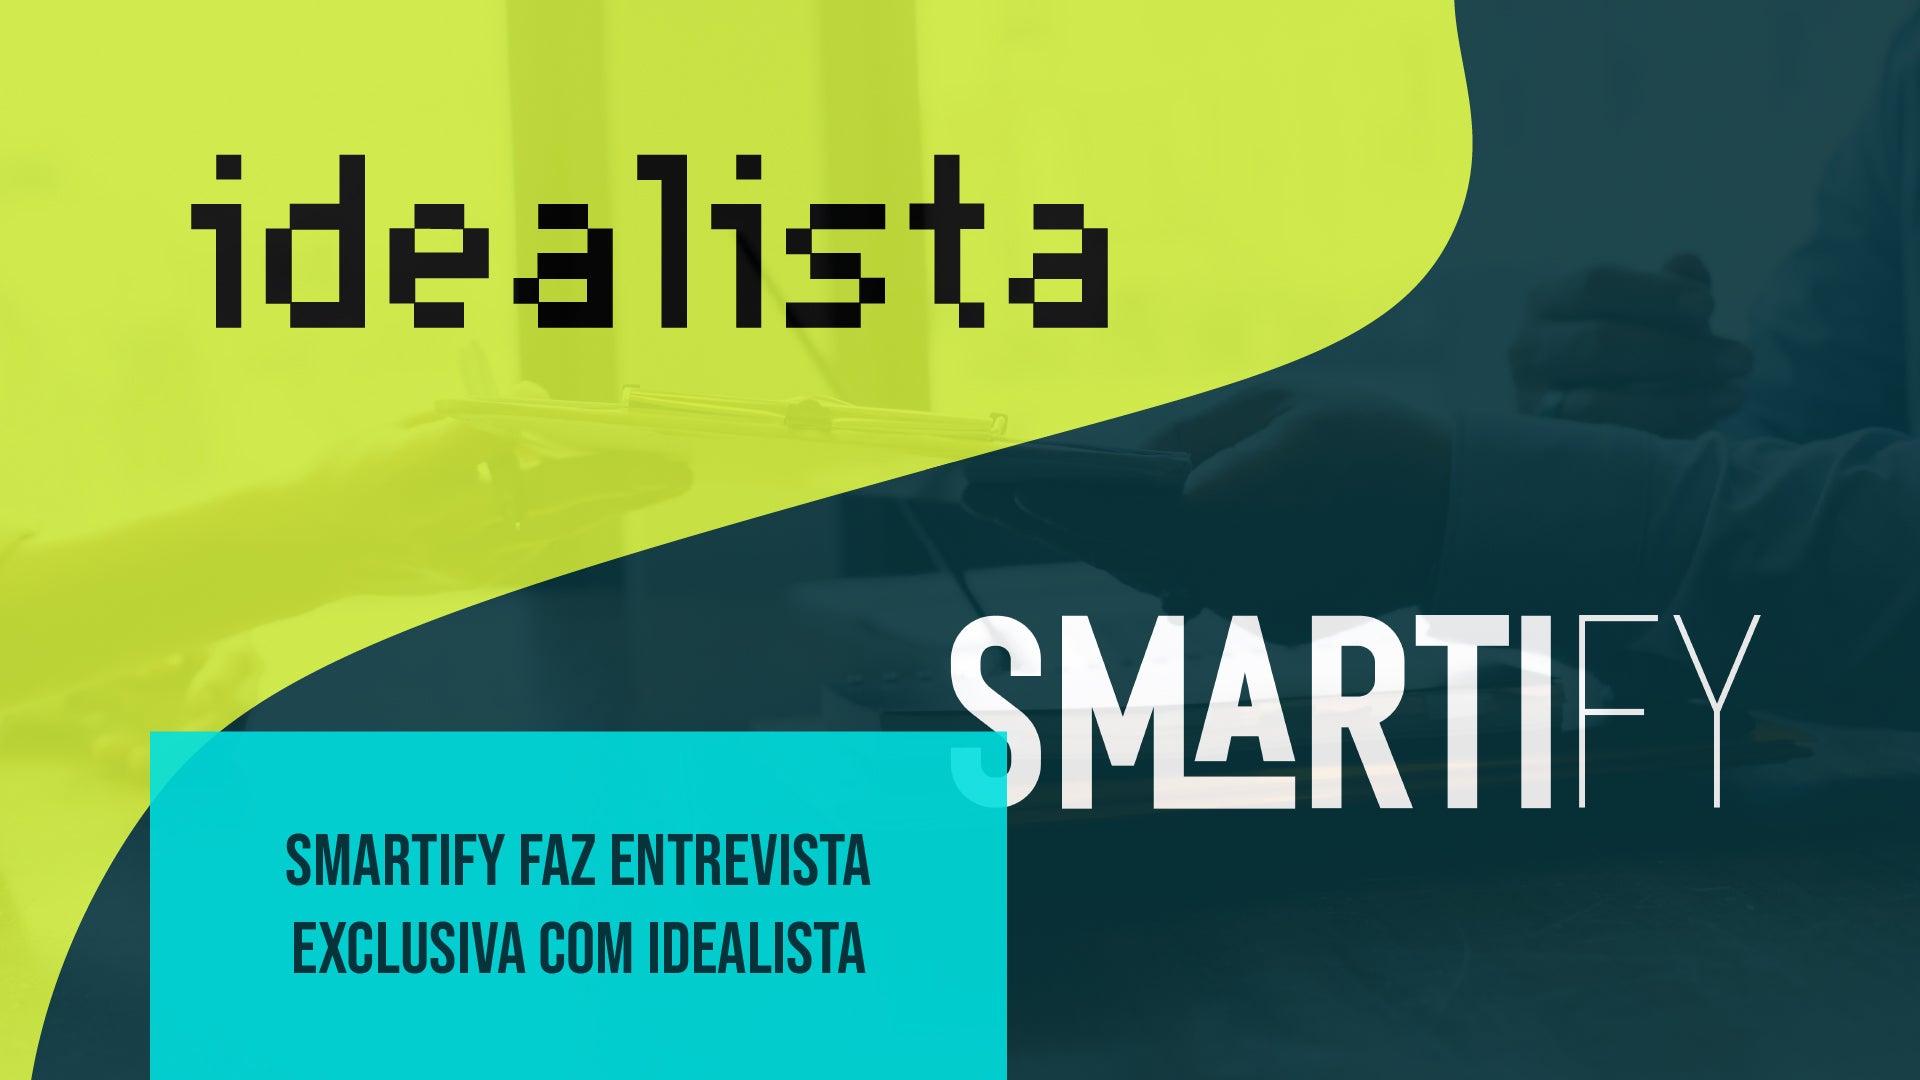 Entrevista Exclusiva da Smartify no Idealista revela a Revolução da Automação Residencial